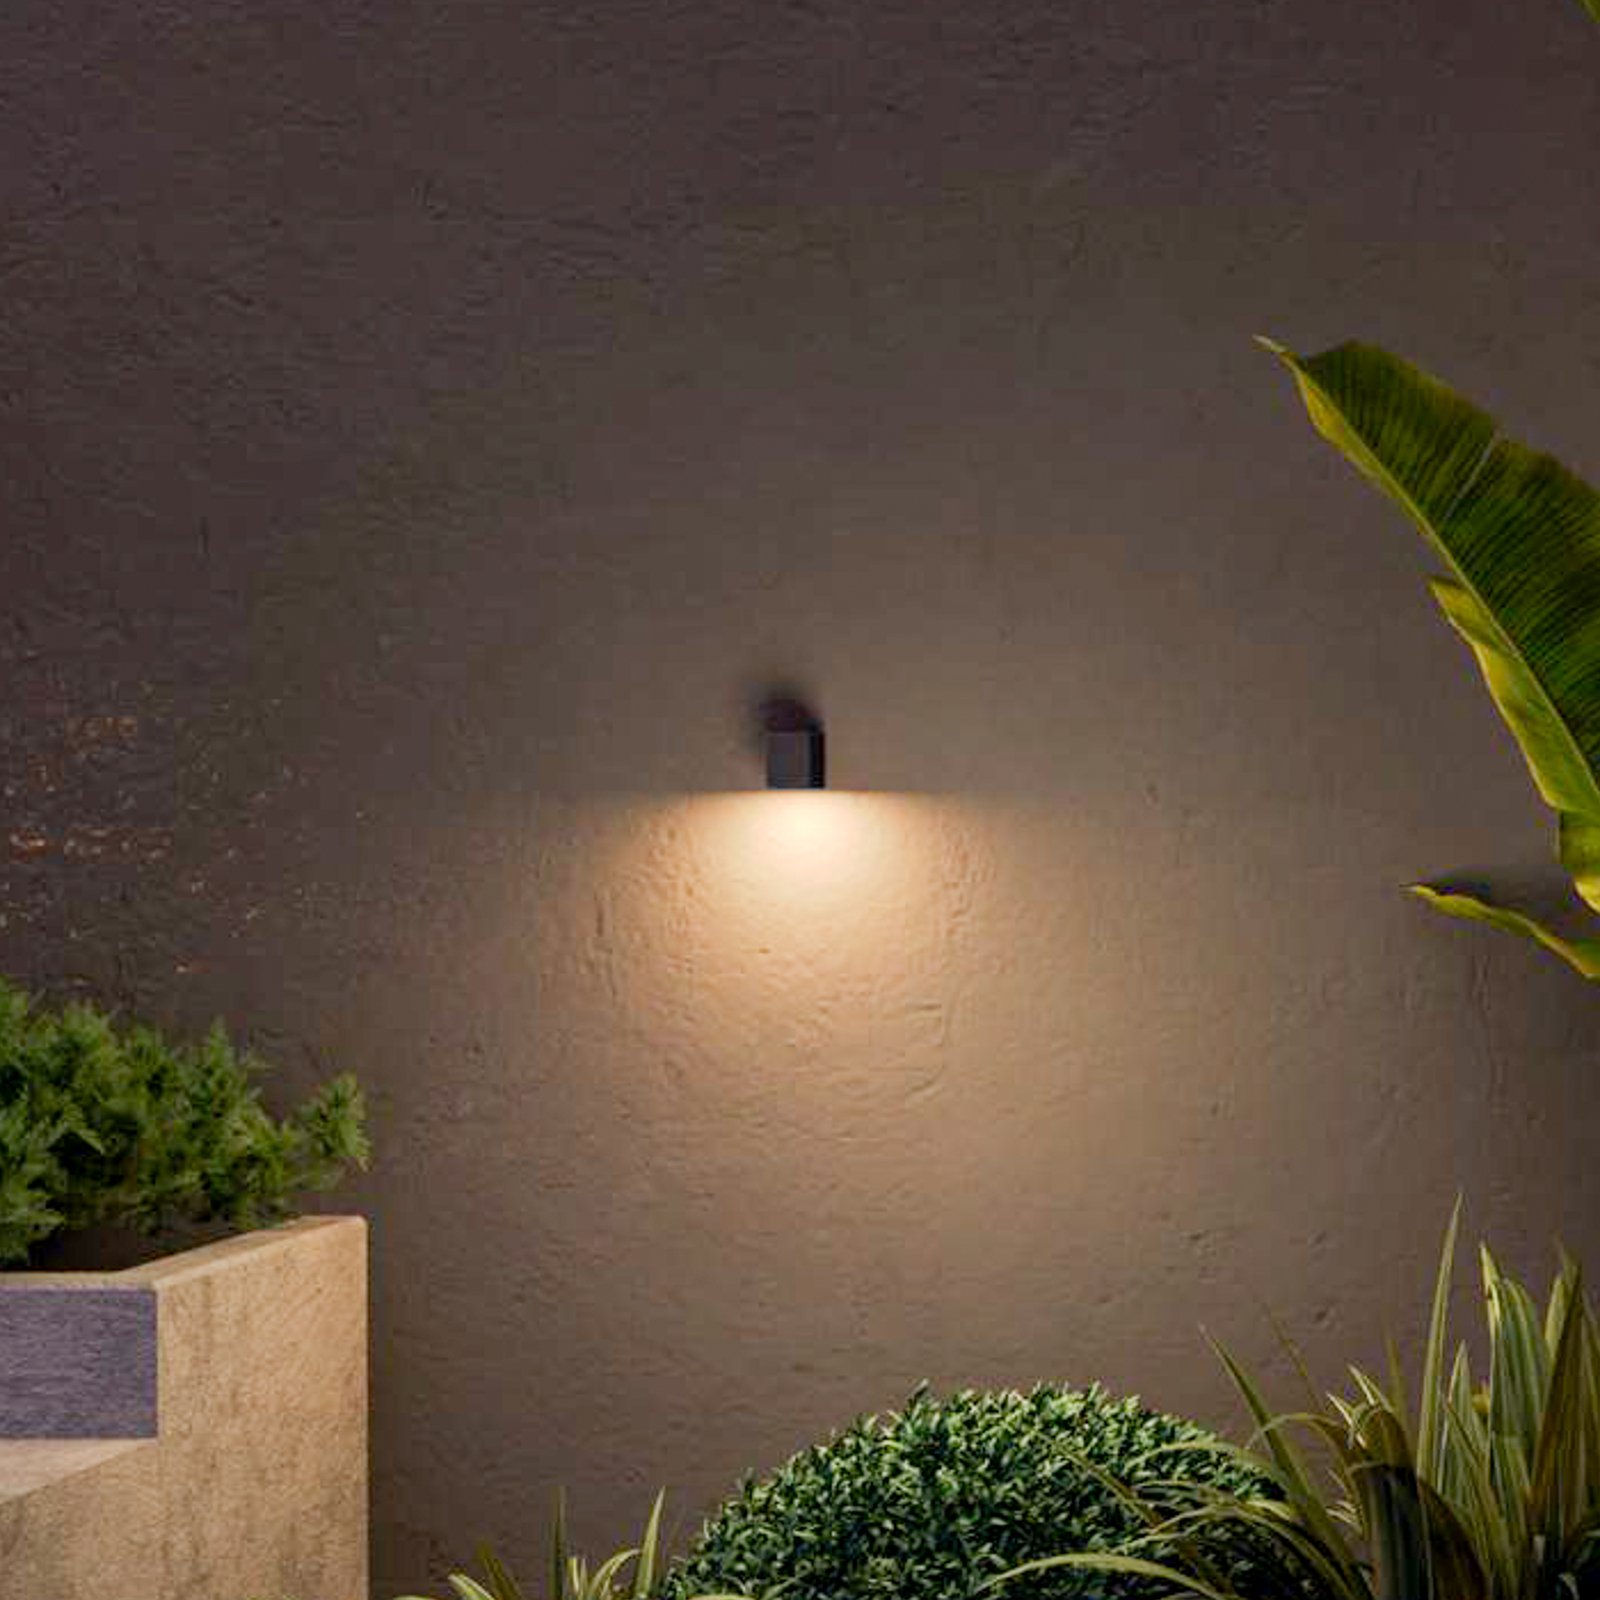 Calex outdoor wall light GU10, downlight, height 8 cm, black